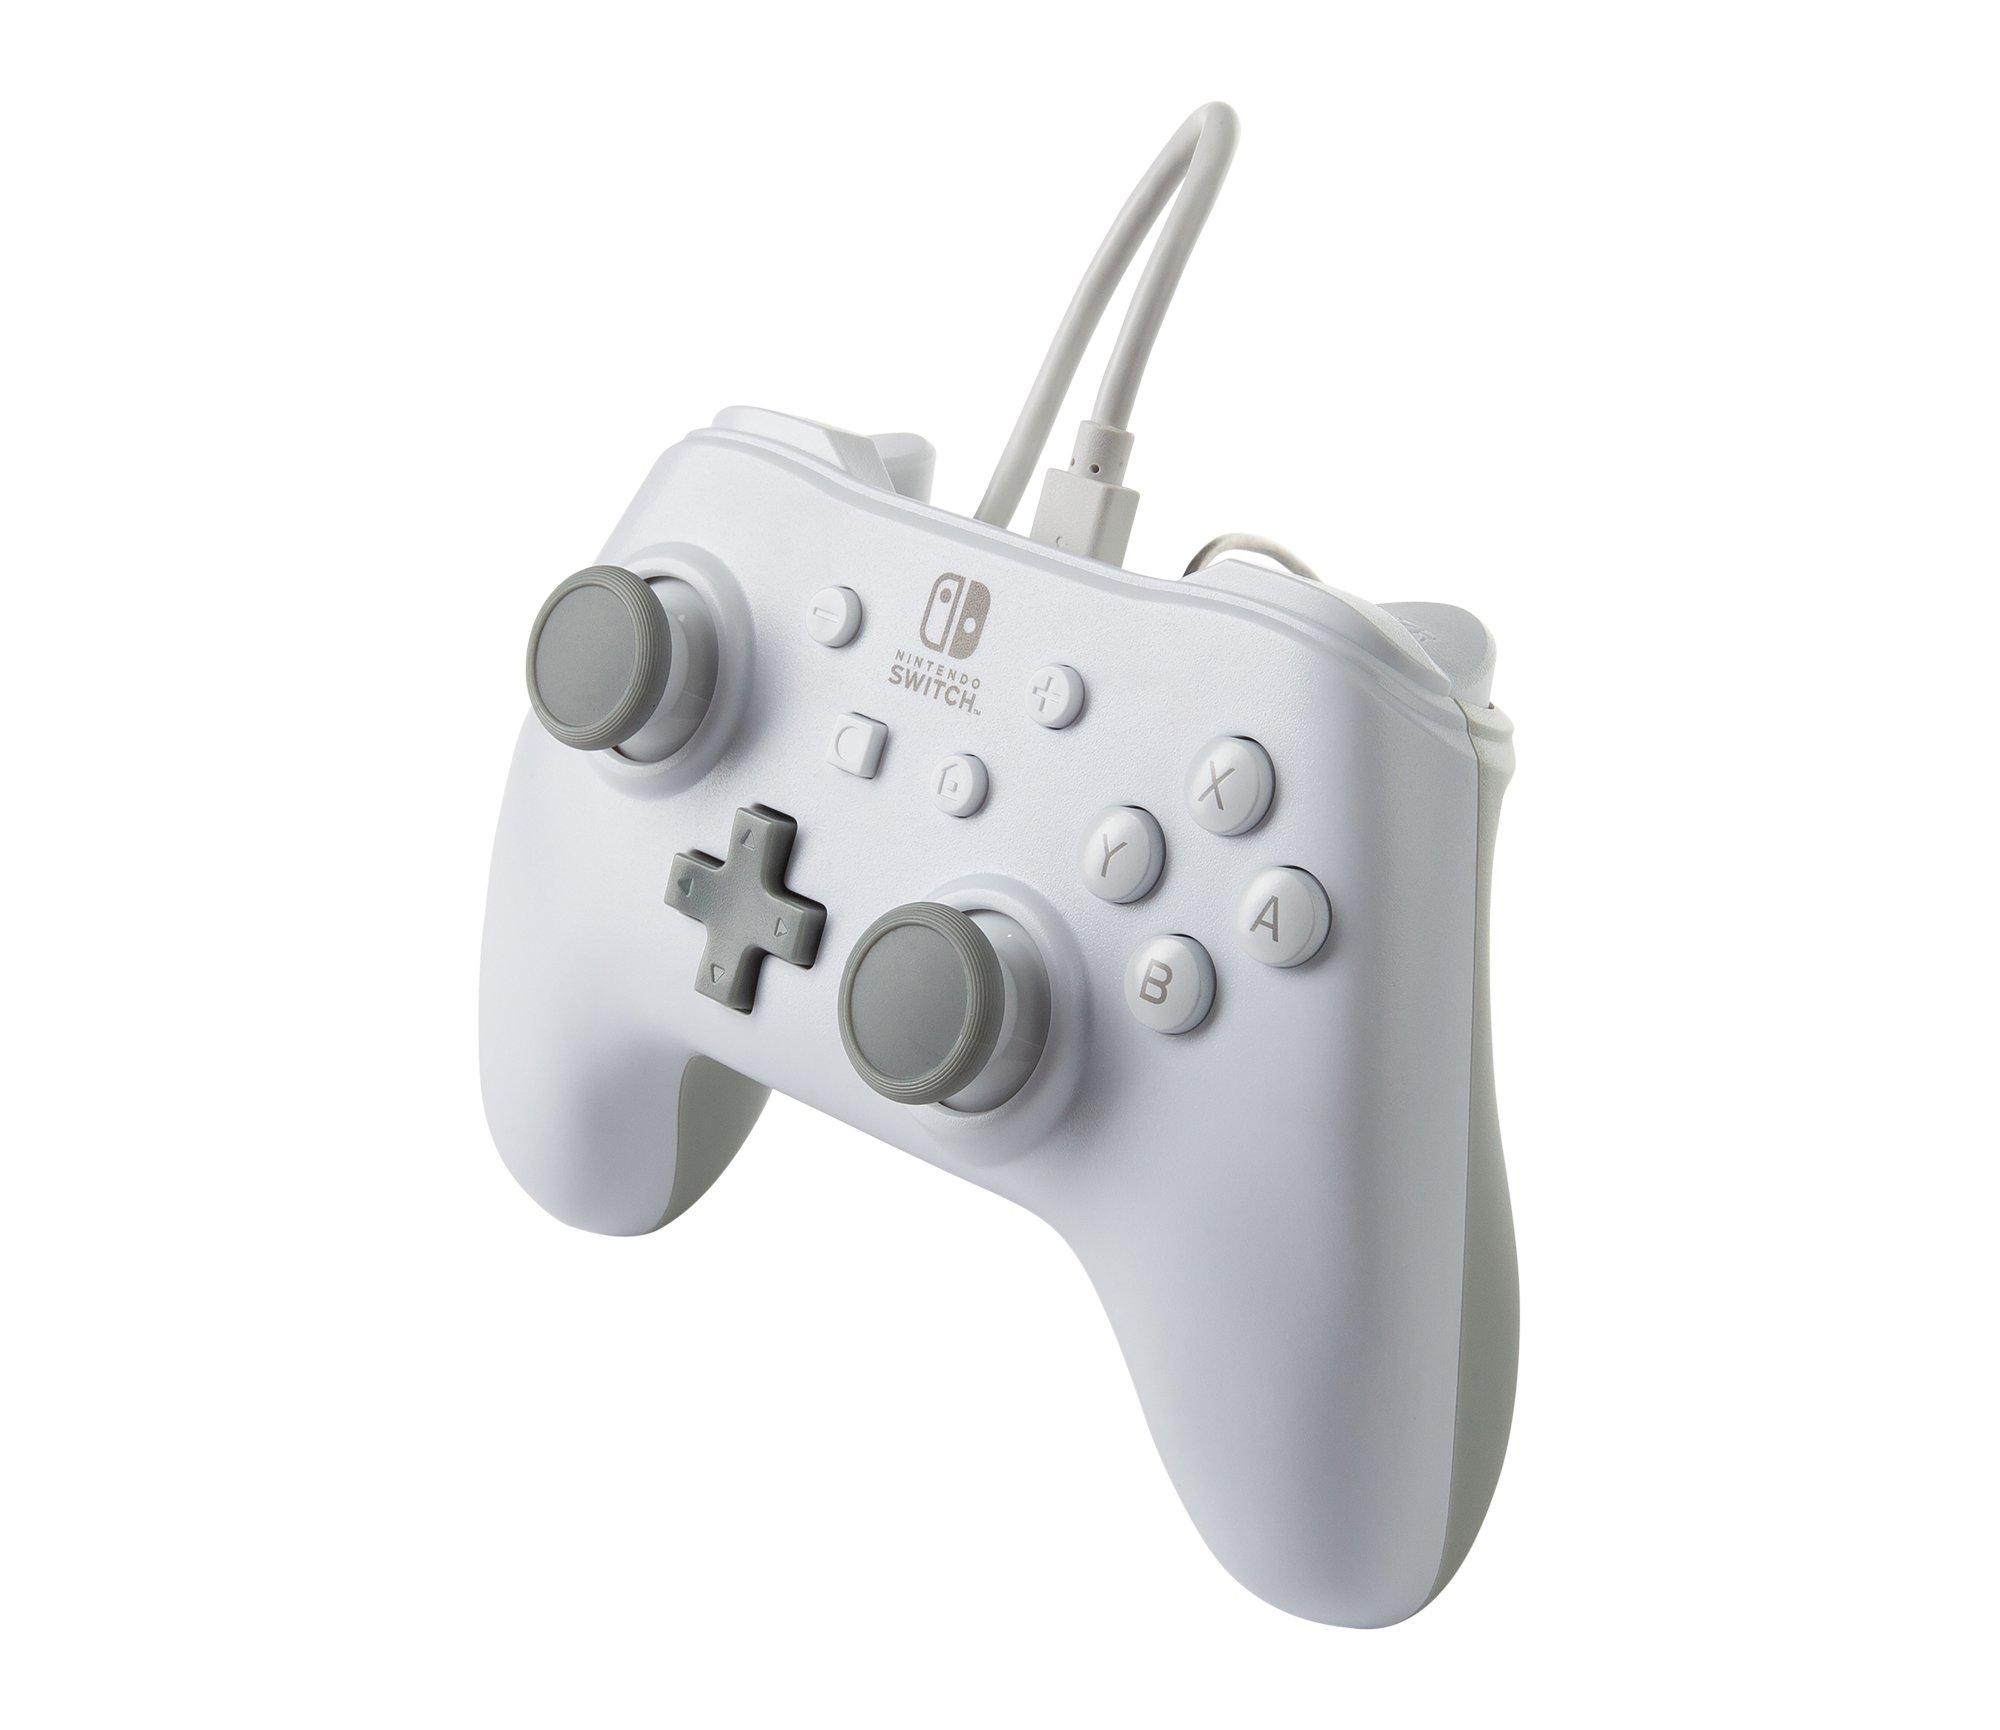 POWERA  1517033-01 accessoire de jeux vidéo Gris, Blanc USB Manette de jeu Analogique Nintendo Switch 